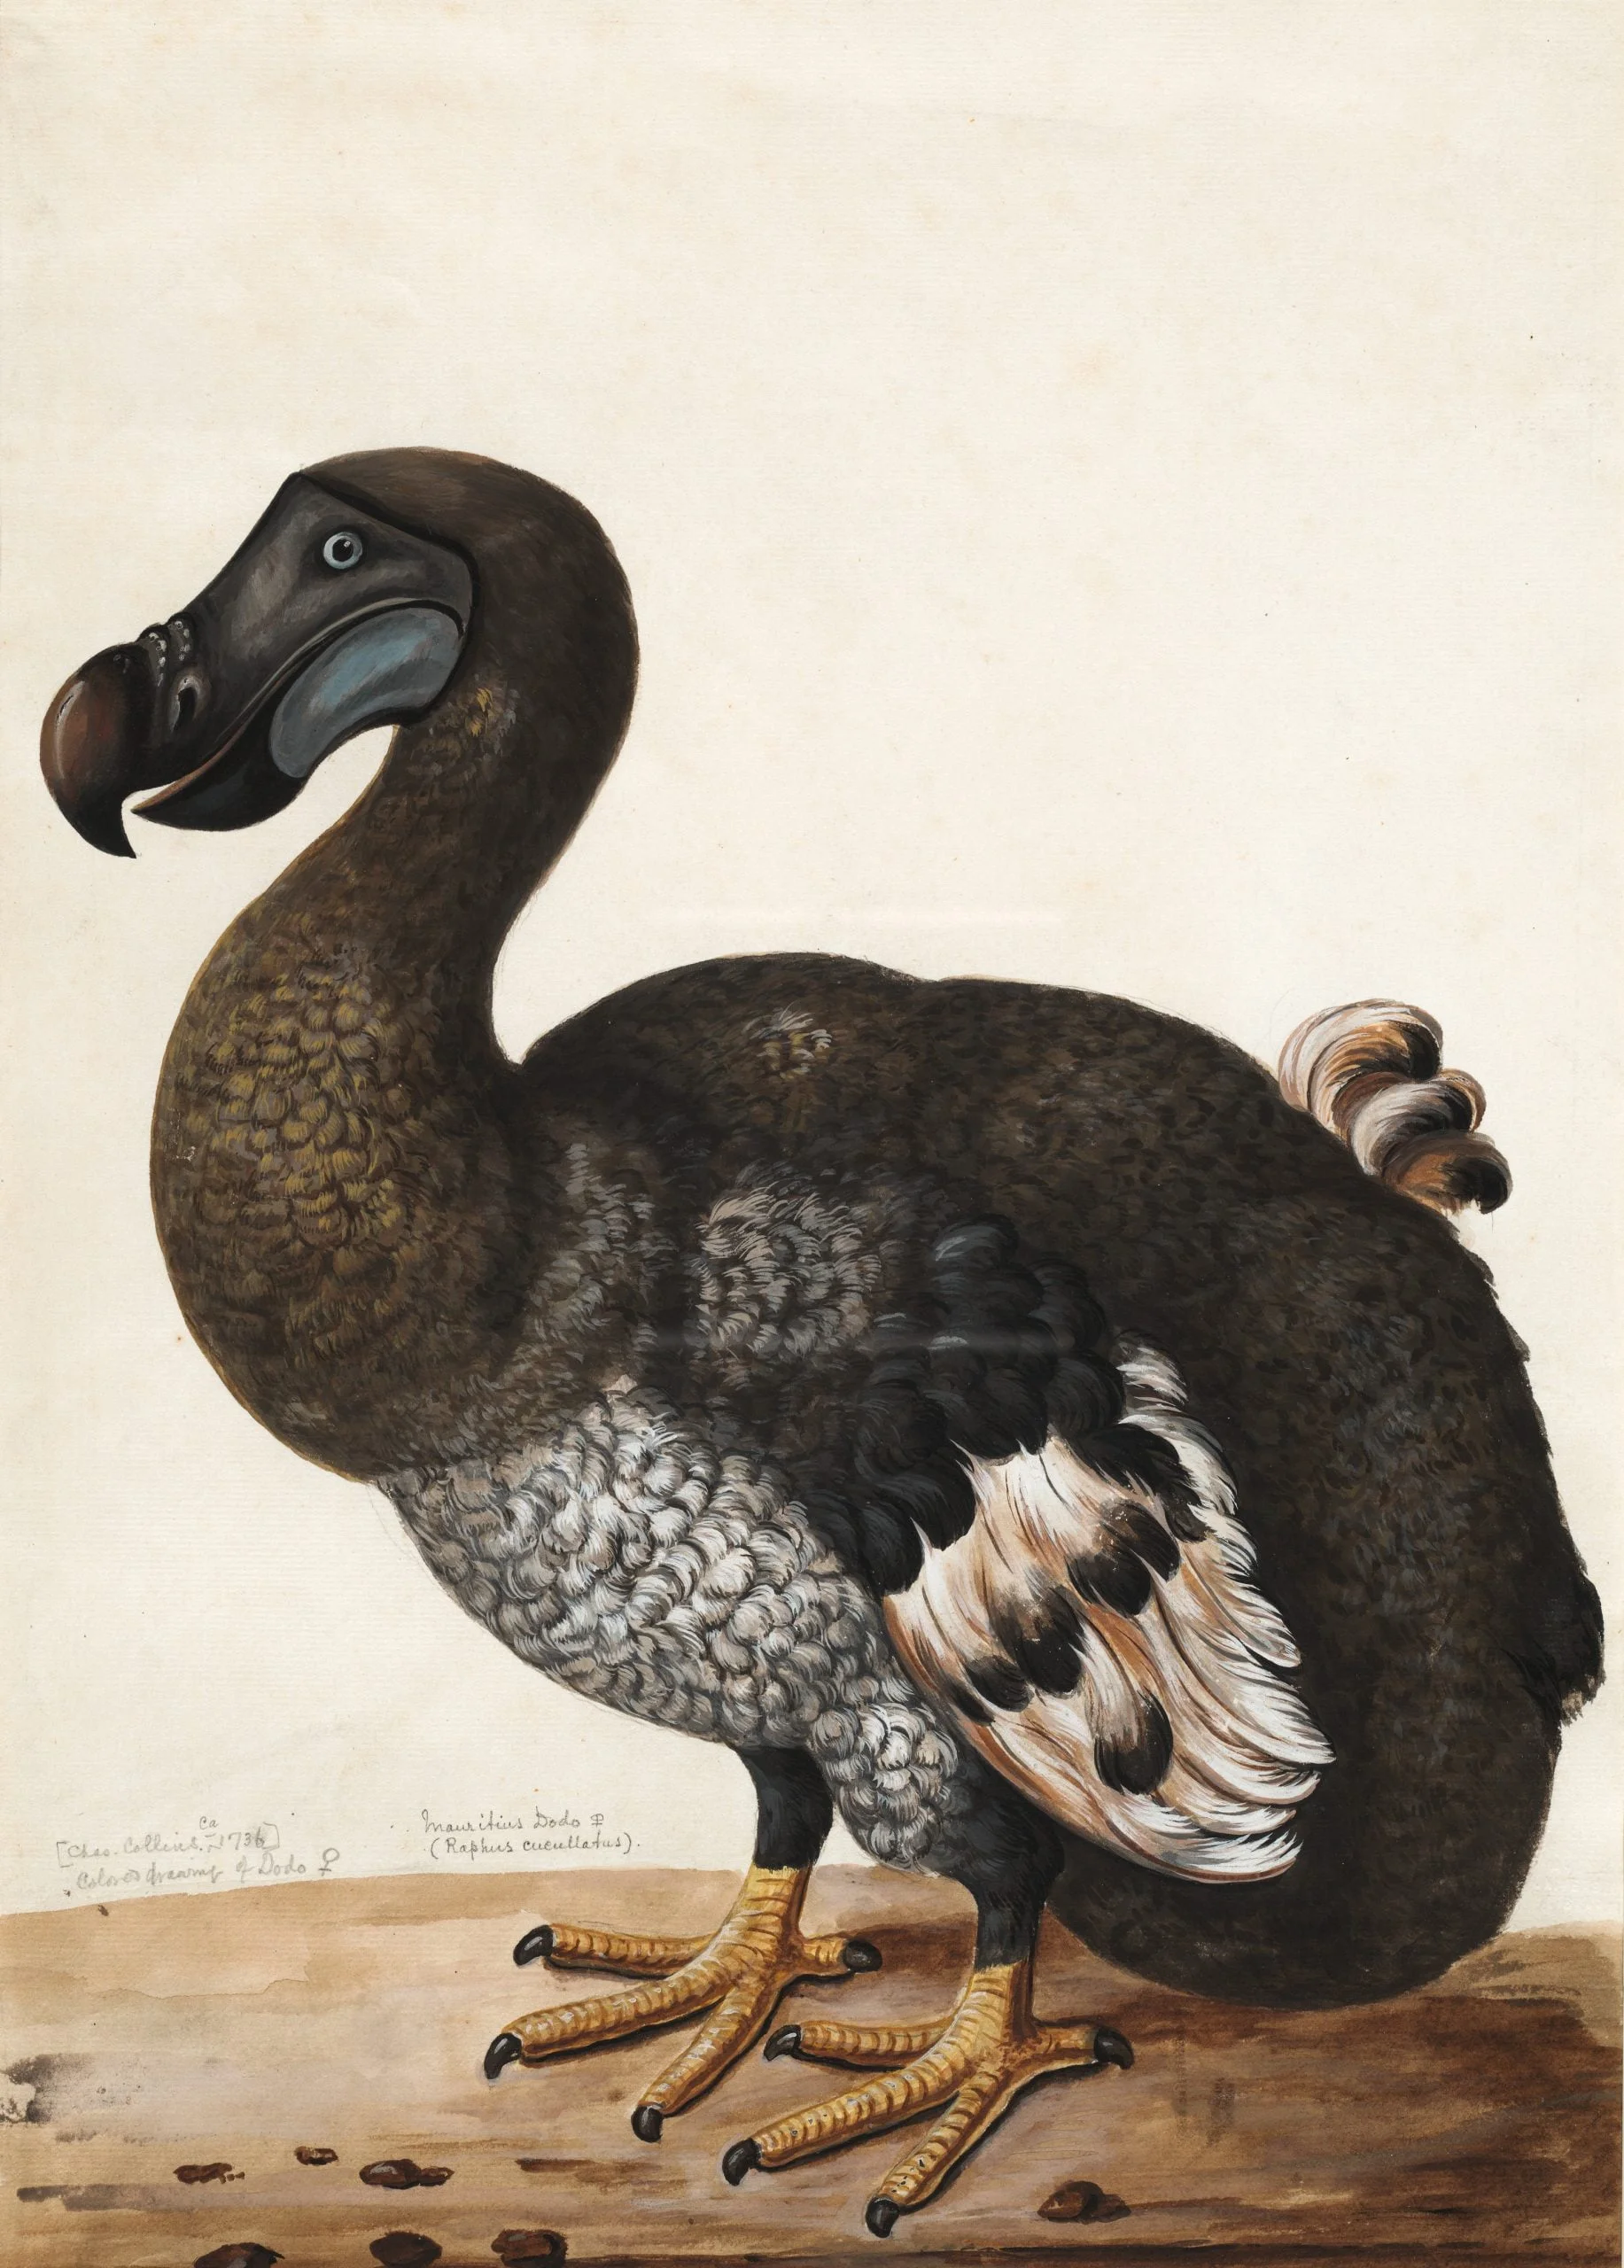 Nesli tükenmiş hayvan olan Dodo Kuşu görseli